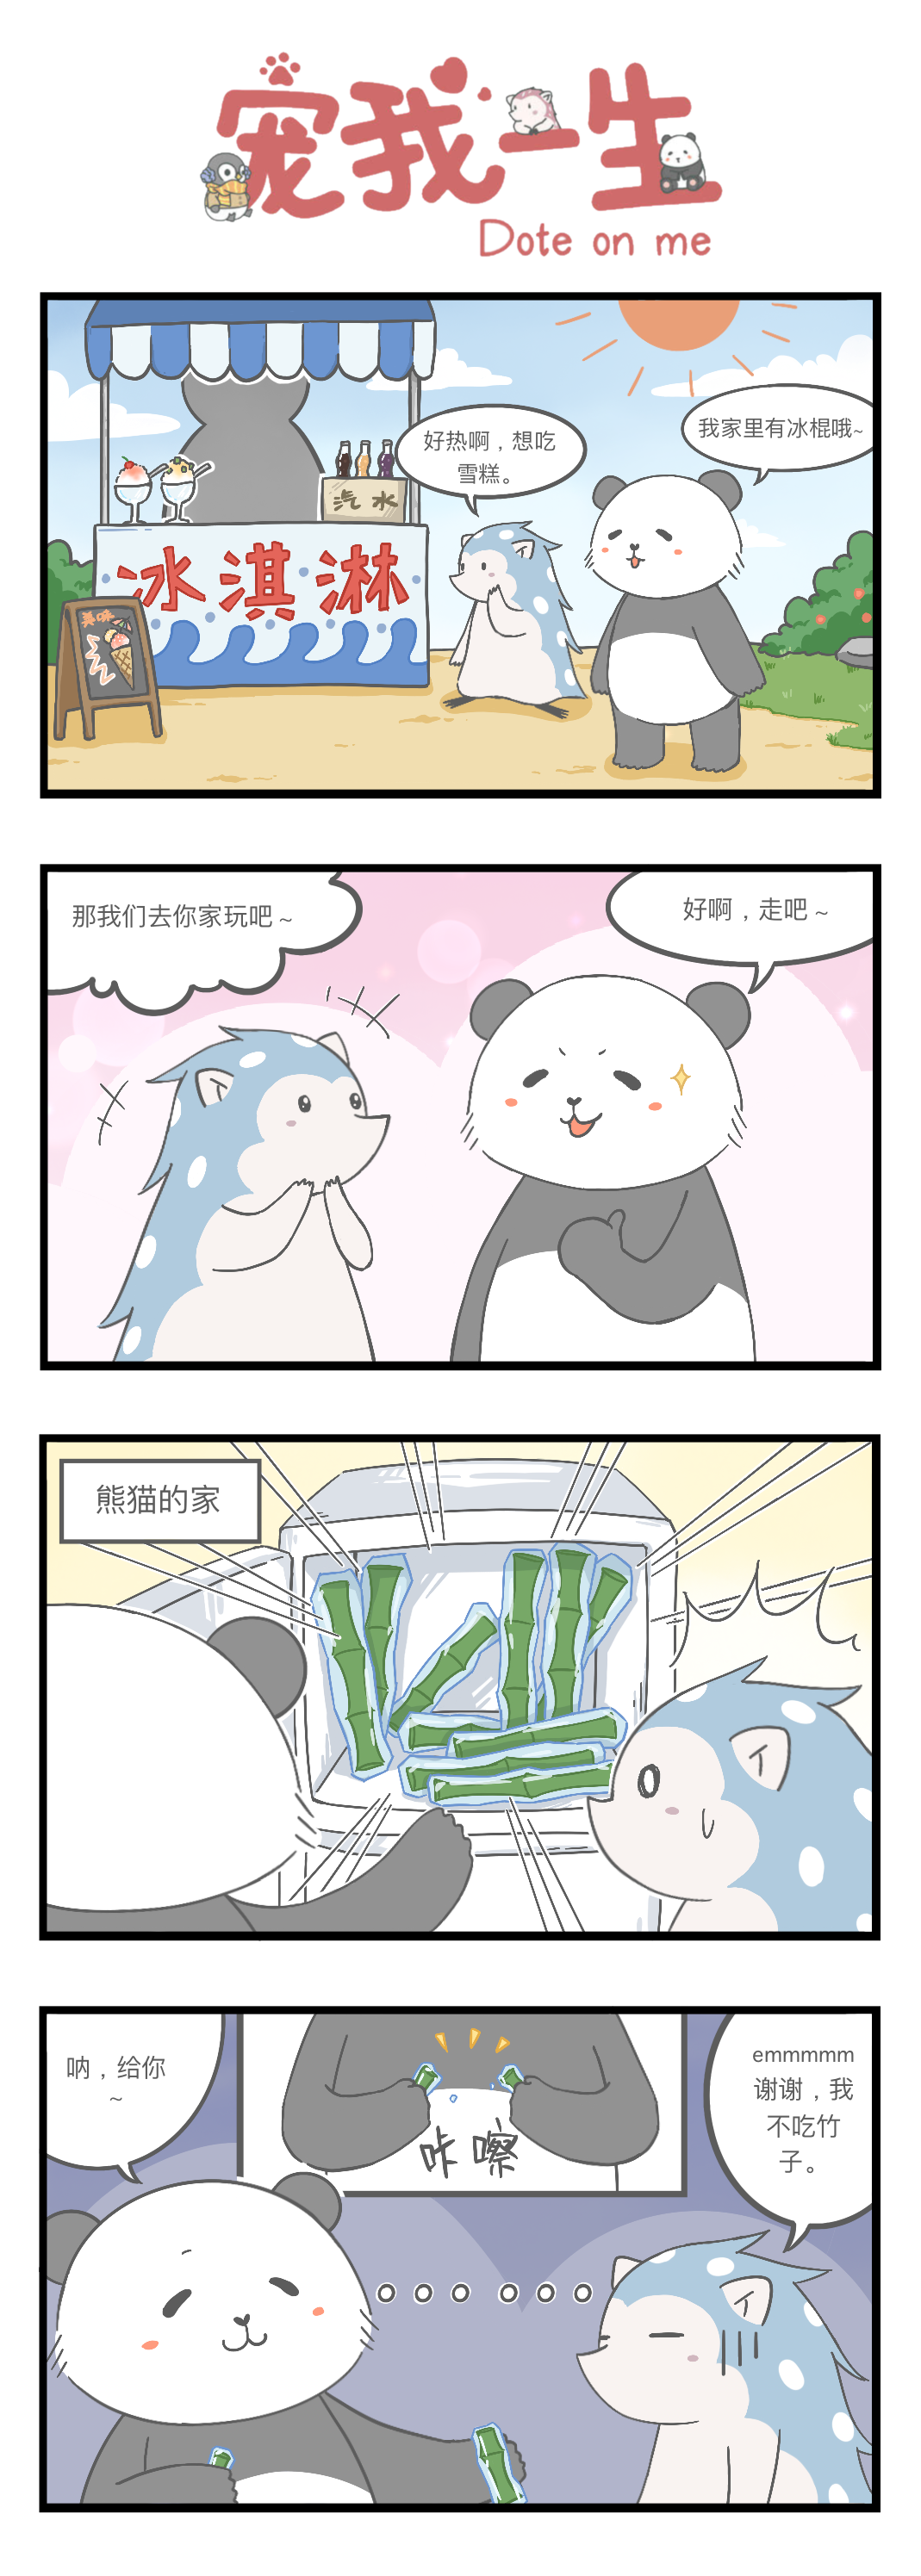 【宠我条漫】要不要来一口熊猫家的冻冰棍